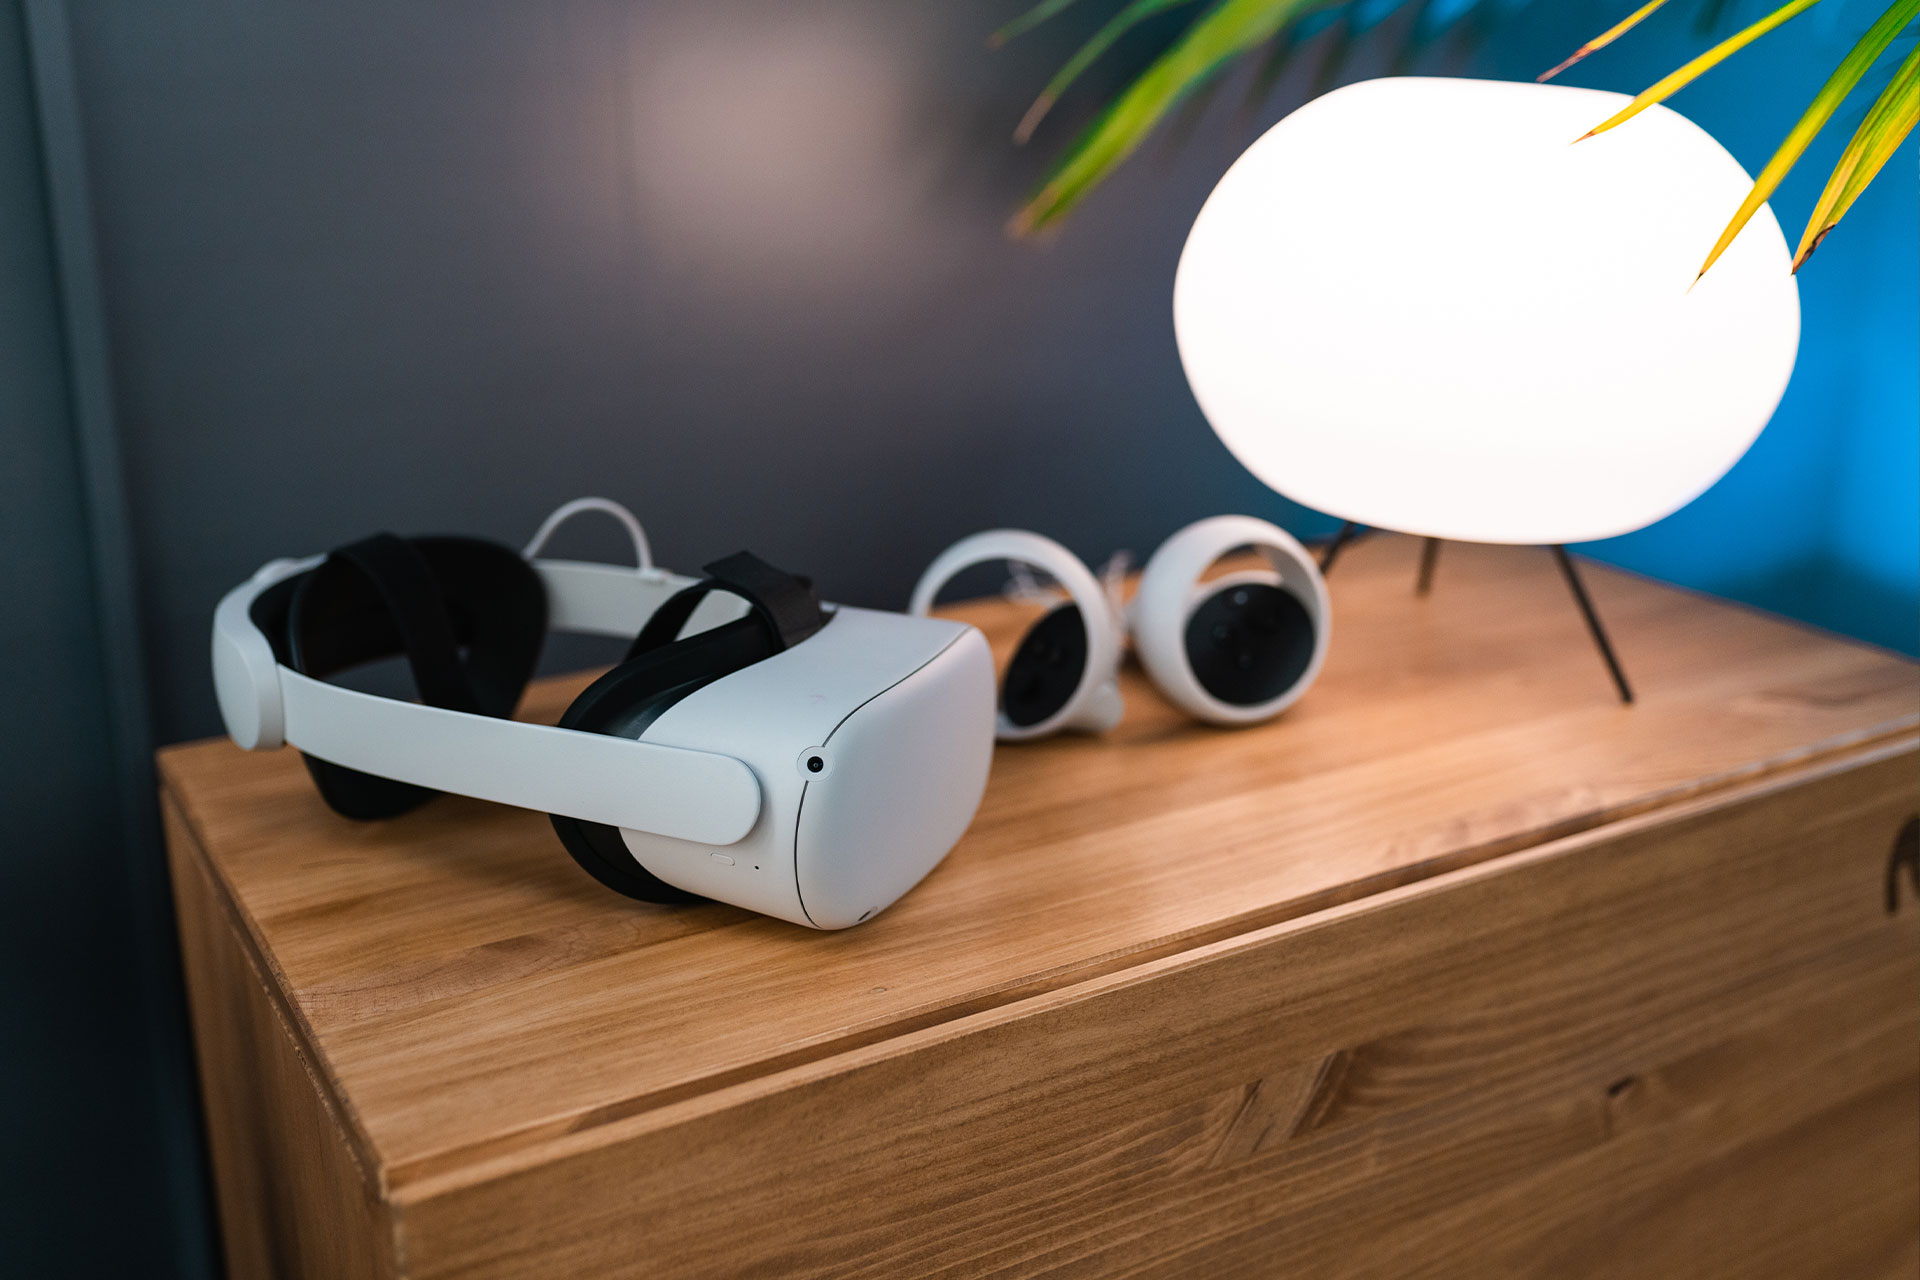 gafas de realidad virtual apoyadas sobre una comoda y al lado de una lampara